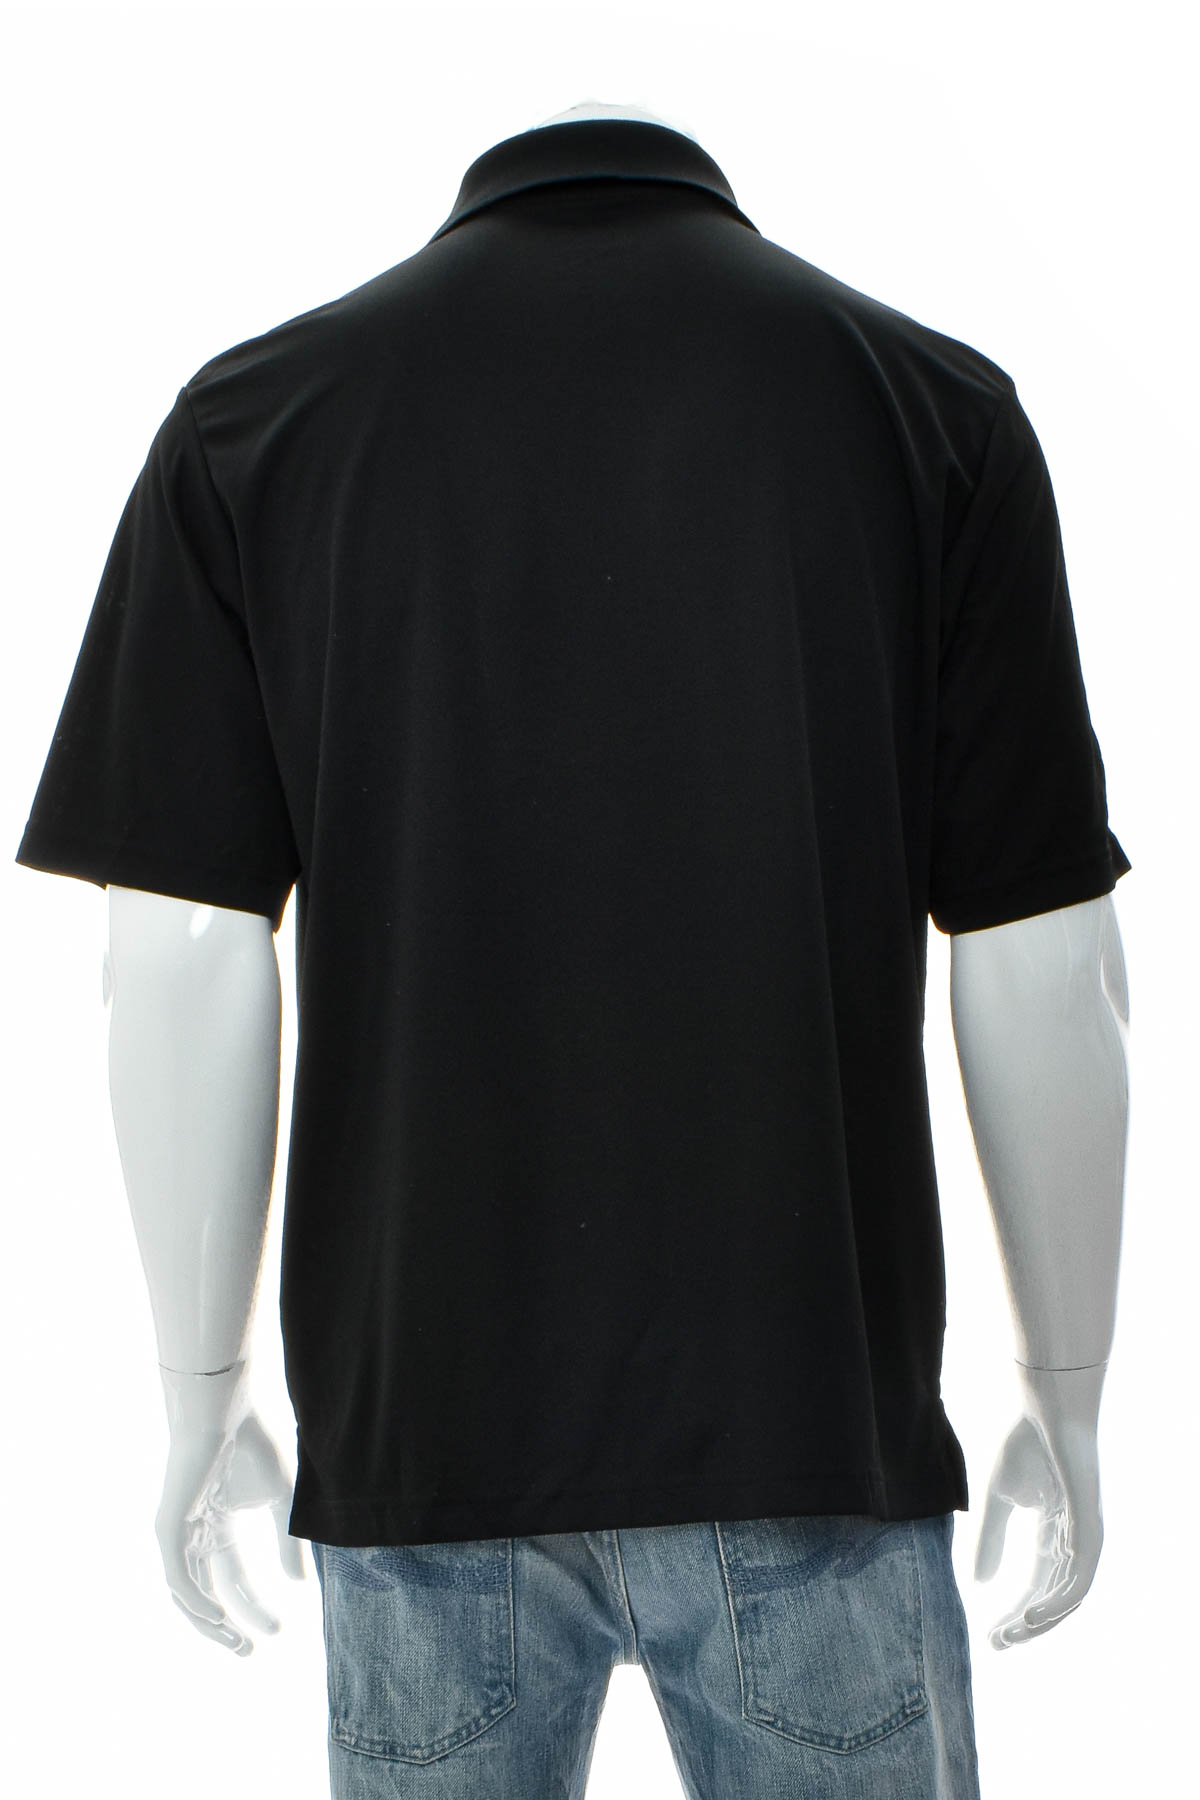 Αντρική μπλούζα - CORE 365 - 1